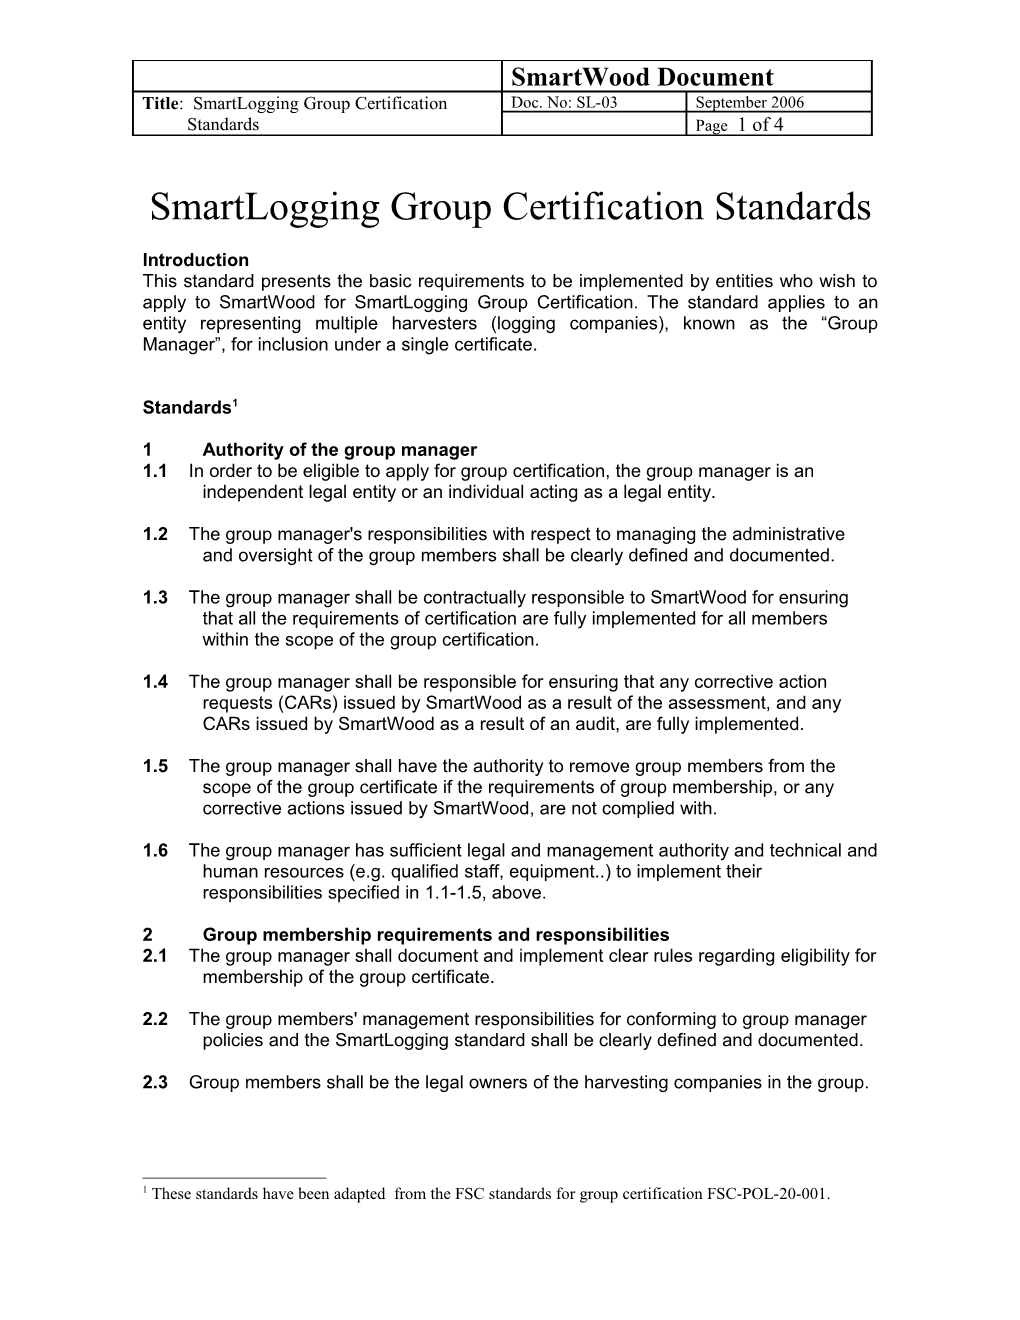 Smartlogging Group Certification Standards